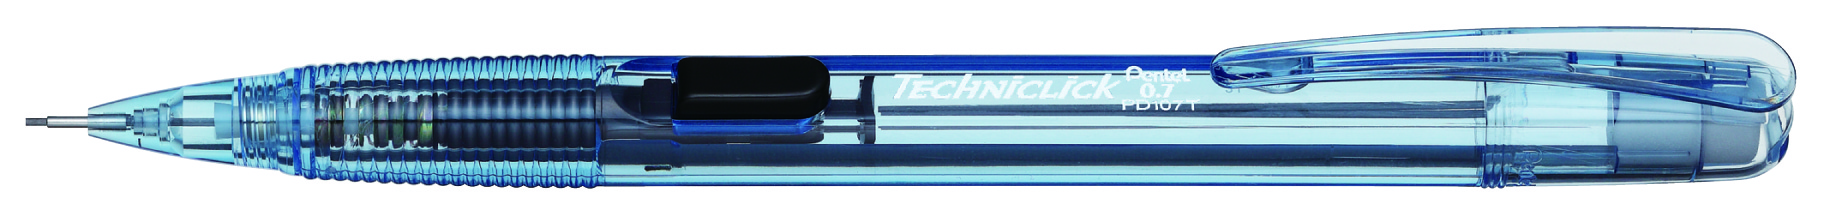 Lapicero Pentel techniclick, punto 0.7 m Lapicero Pentel color azul, punta fija de 3.5 mm, con goma y tapa en la parte superior, con agarre estirado para mayor comodidad, con botón color negro para bajar puntillas                                                                                    m, color azul, 1 pieza                   - PD107T-SR